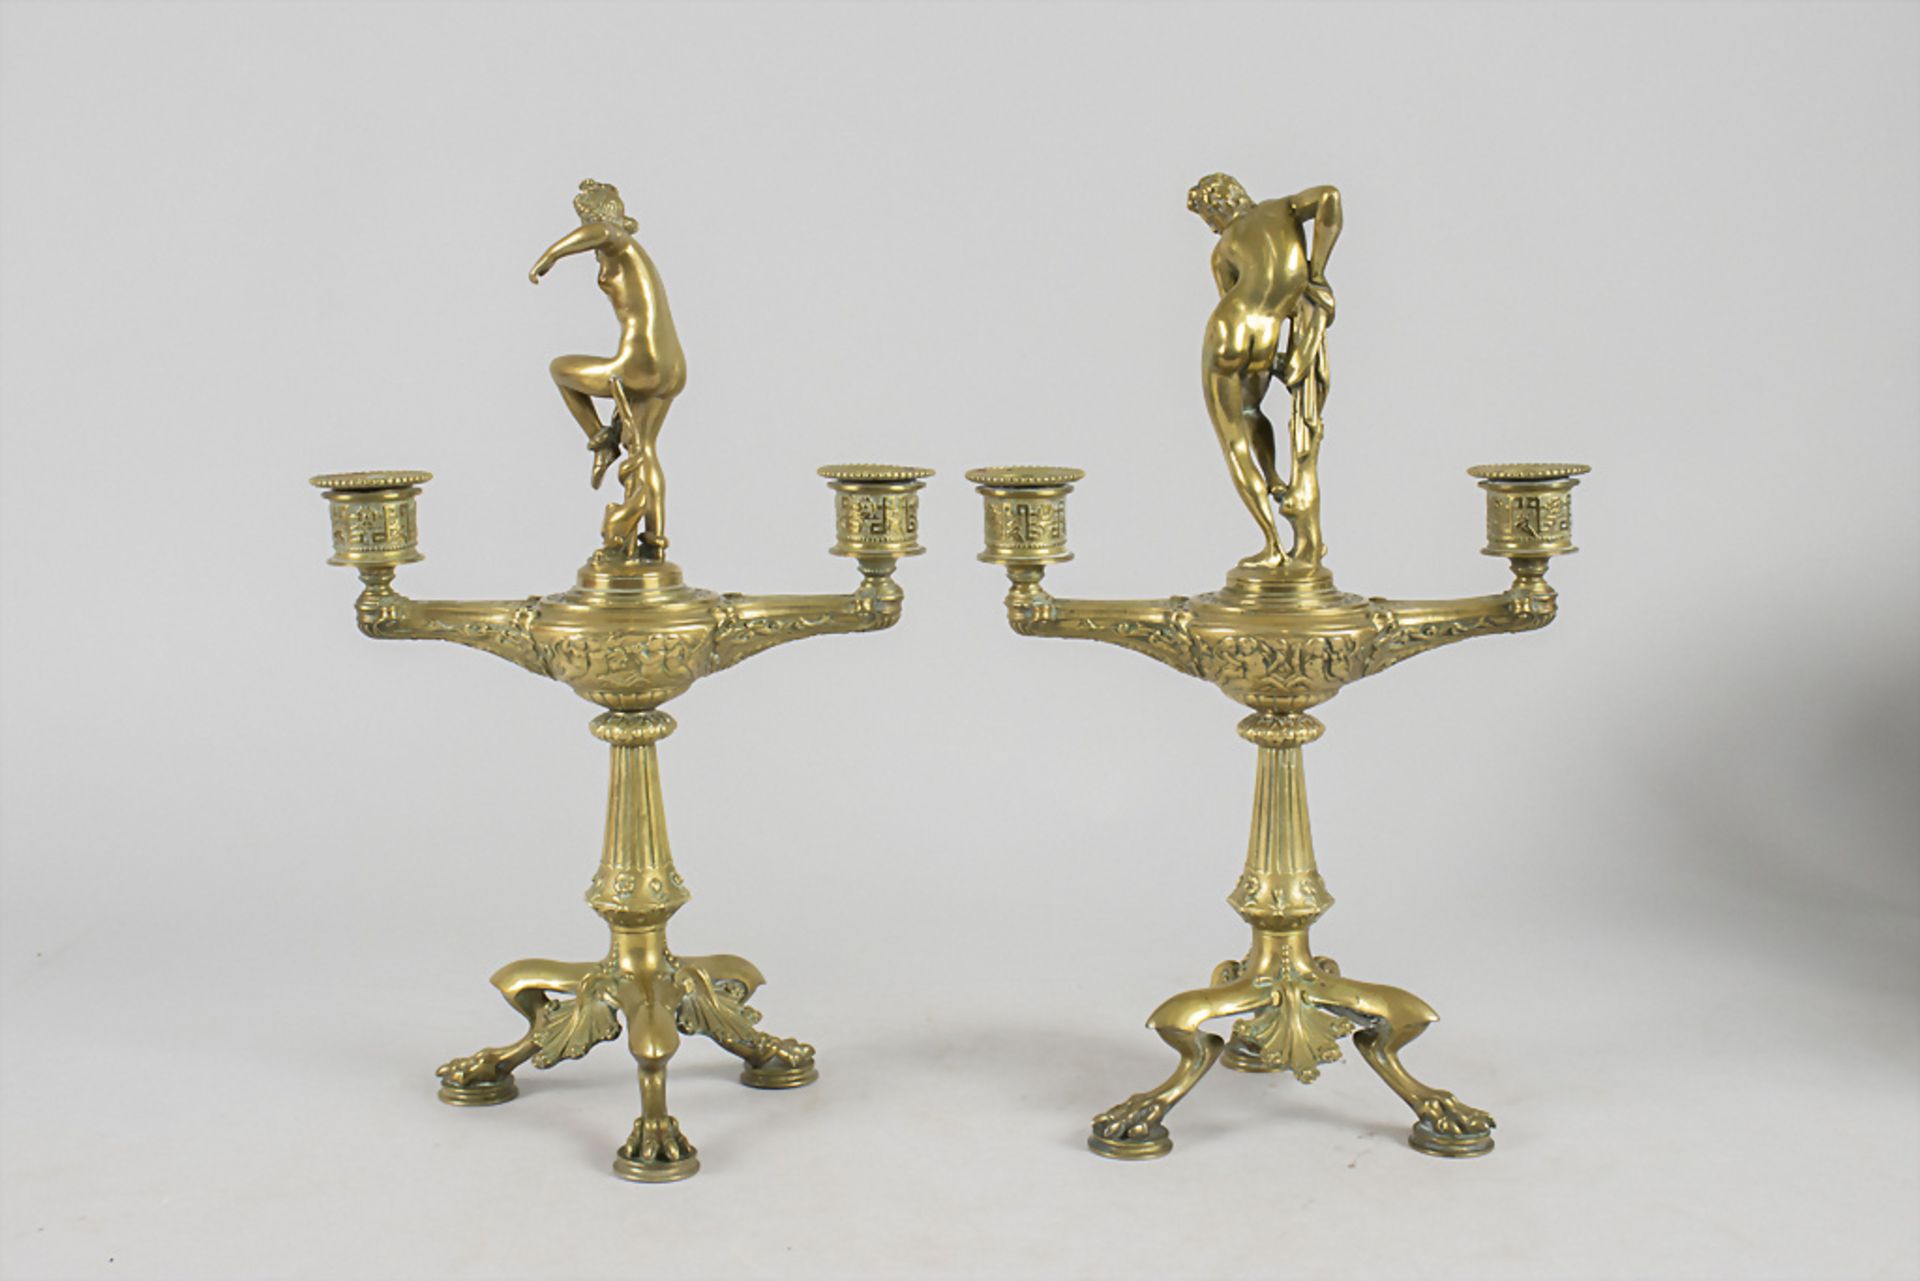 Paar Klassizismus Leuchter / A classicism pair of candle holders, wohl Barbedienne, Paris, 19. Jh. - Bild 5 aus 8